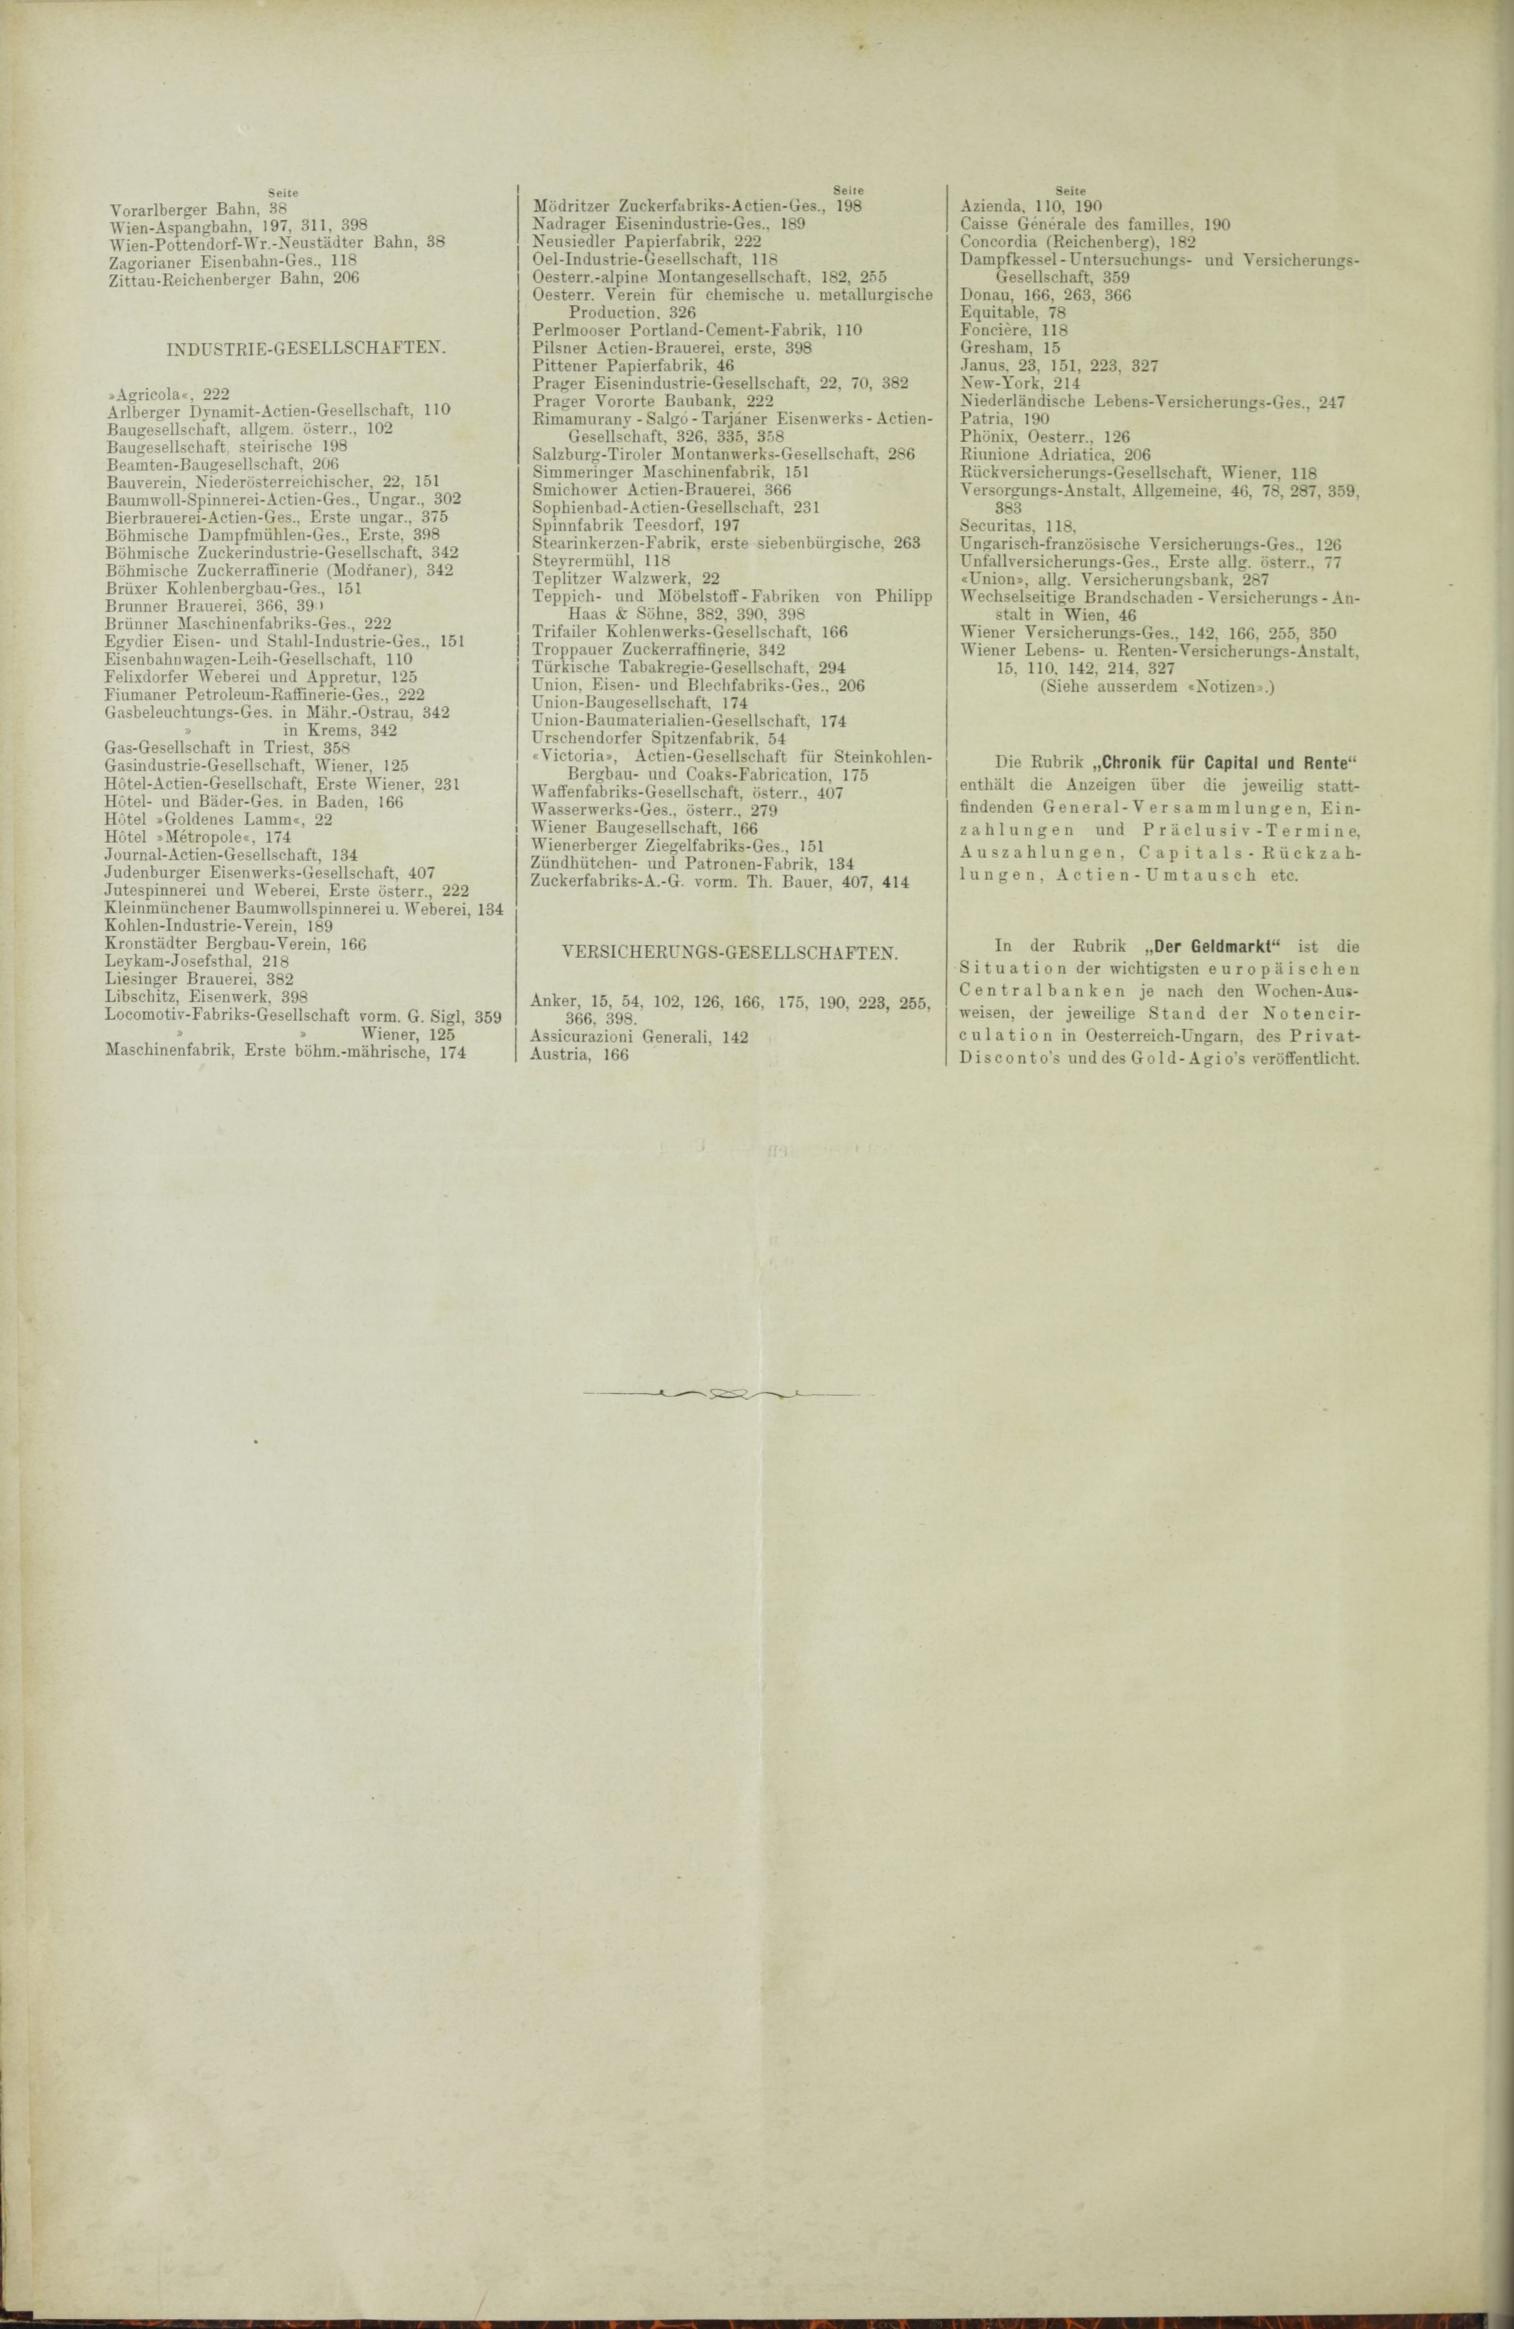 Der Tresor 28.01.1886 - Seite 12